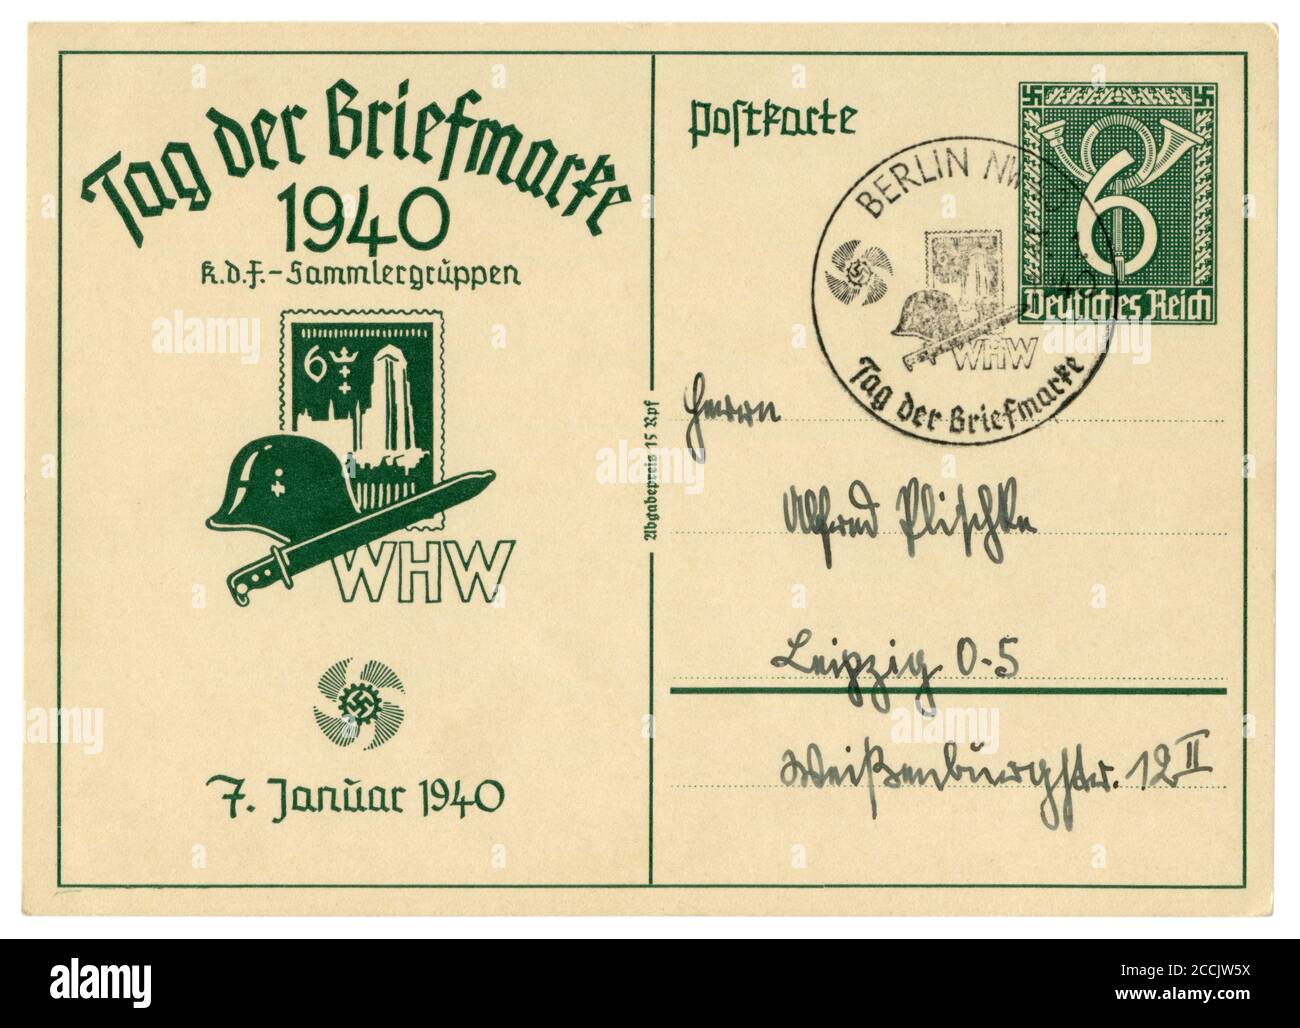 Historische Postkarte: Briefmarkentag Ausgabe 1940: Stahlhelm, Bajonettmesser und Briefmarke der Besetzung Danzig, Sonderstempel. Stockfoto